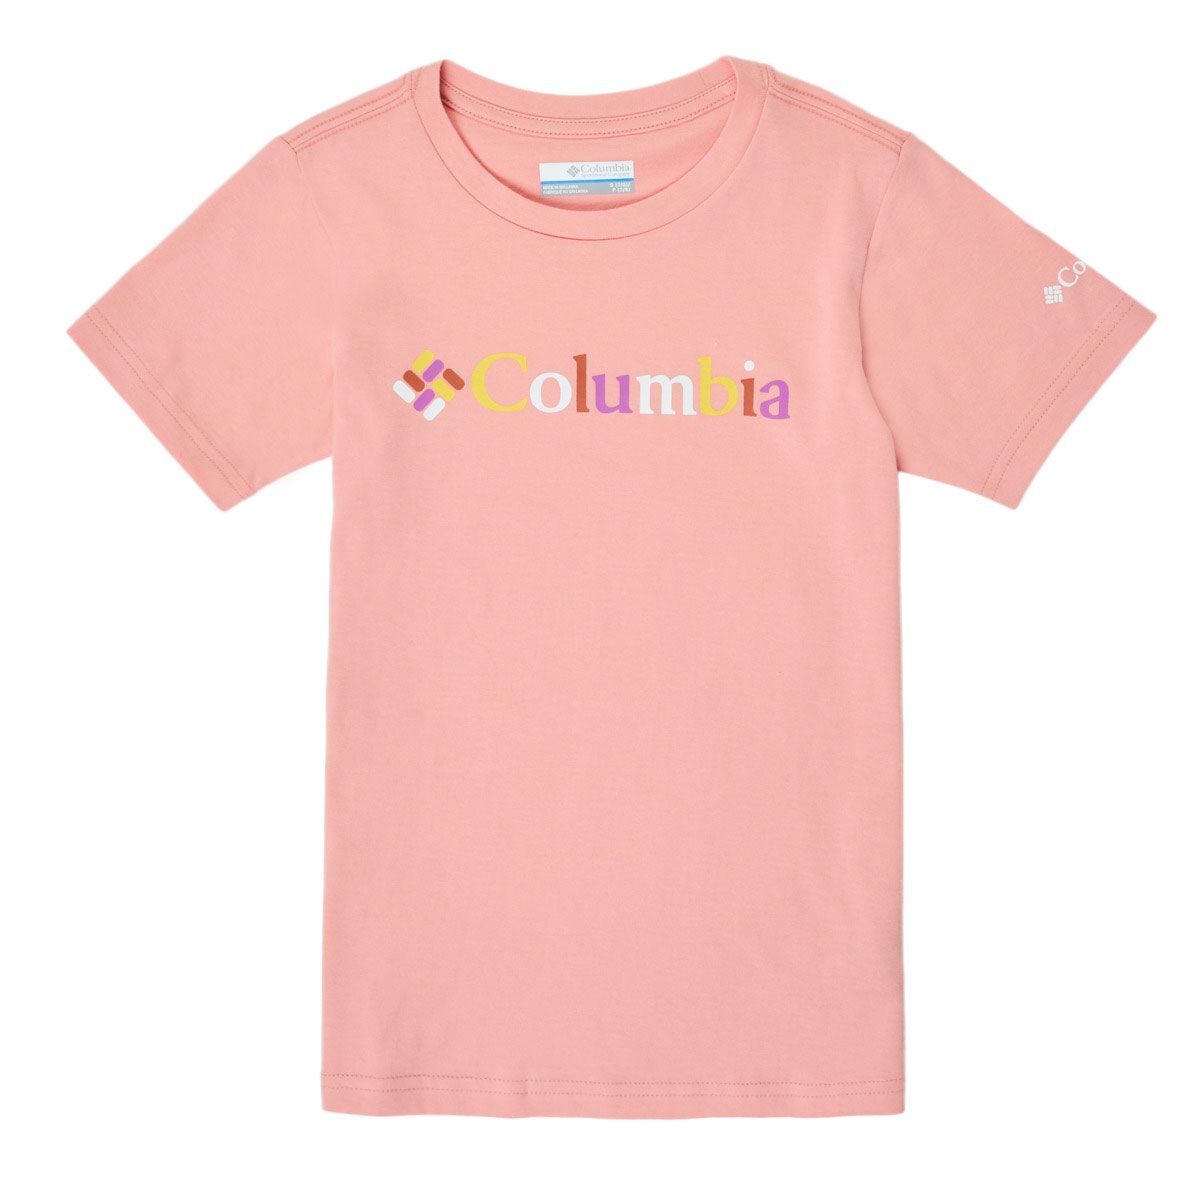 Columbia Sweet Pines Graphic Short Sleeve Tee, t-skjorte junior Faux Pink Kalei 1931281 673 XS (6år) 2021